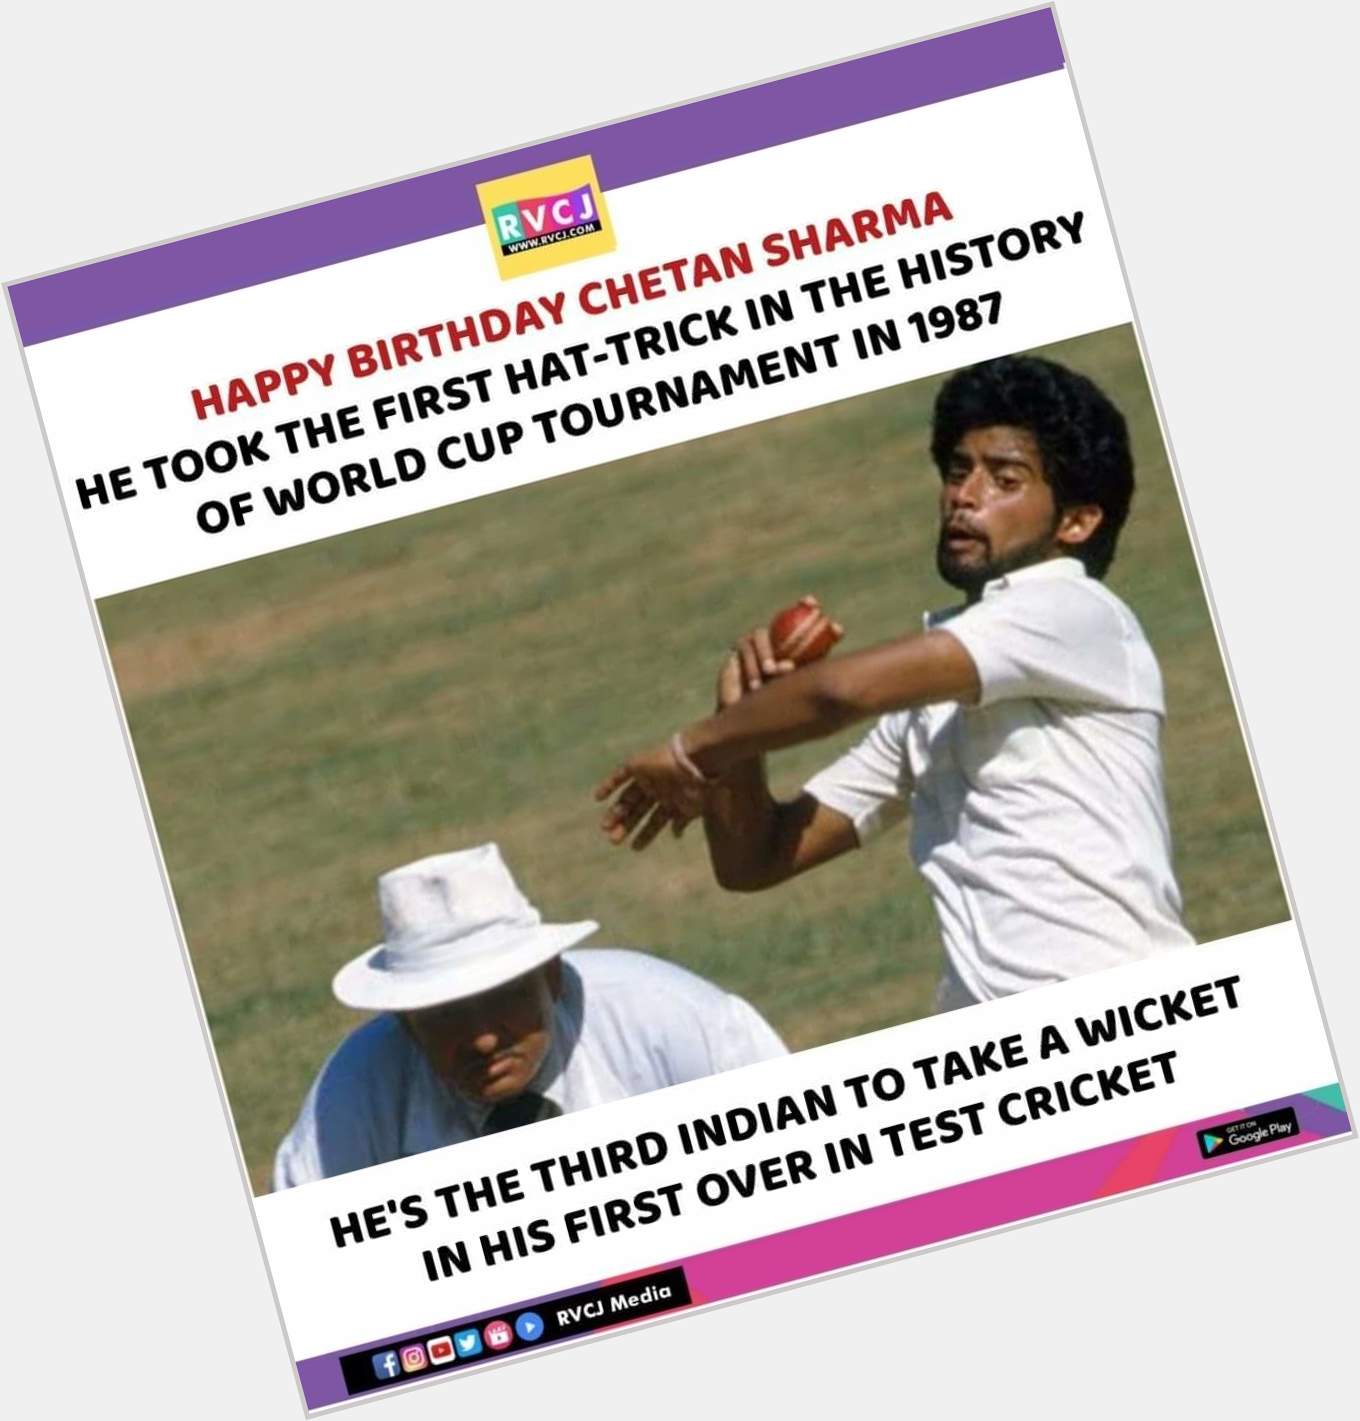 Happy Birthday Chetan Sharma!  